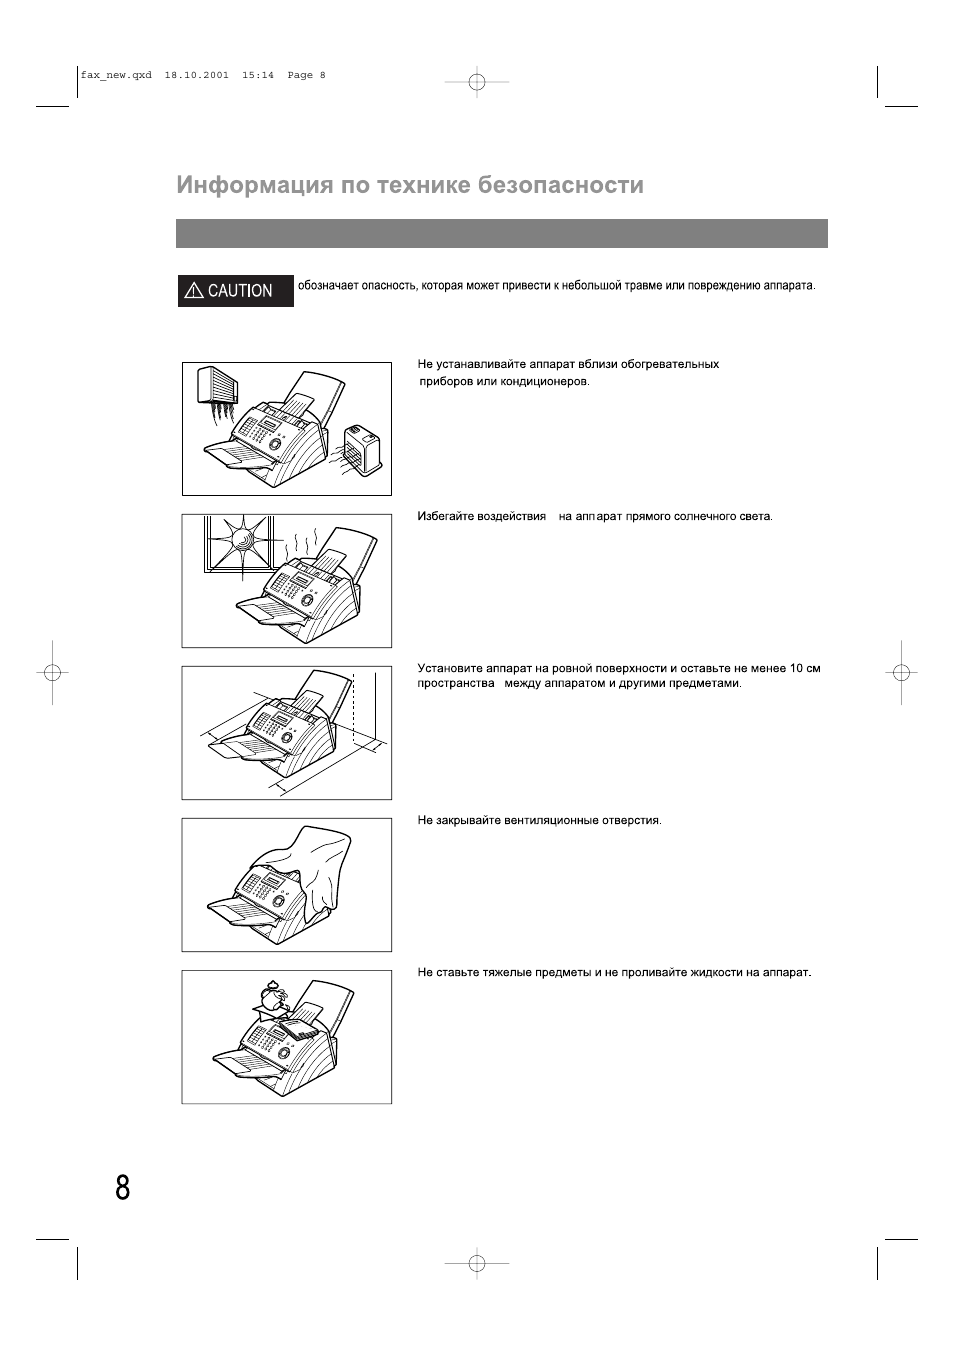 Информация по технике безопасности, А caution | Инструкция по эксплуатации Panasonic UF-490 | Страница 8 / 121